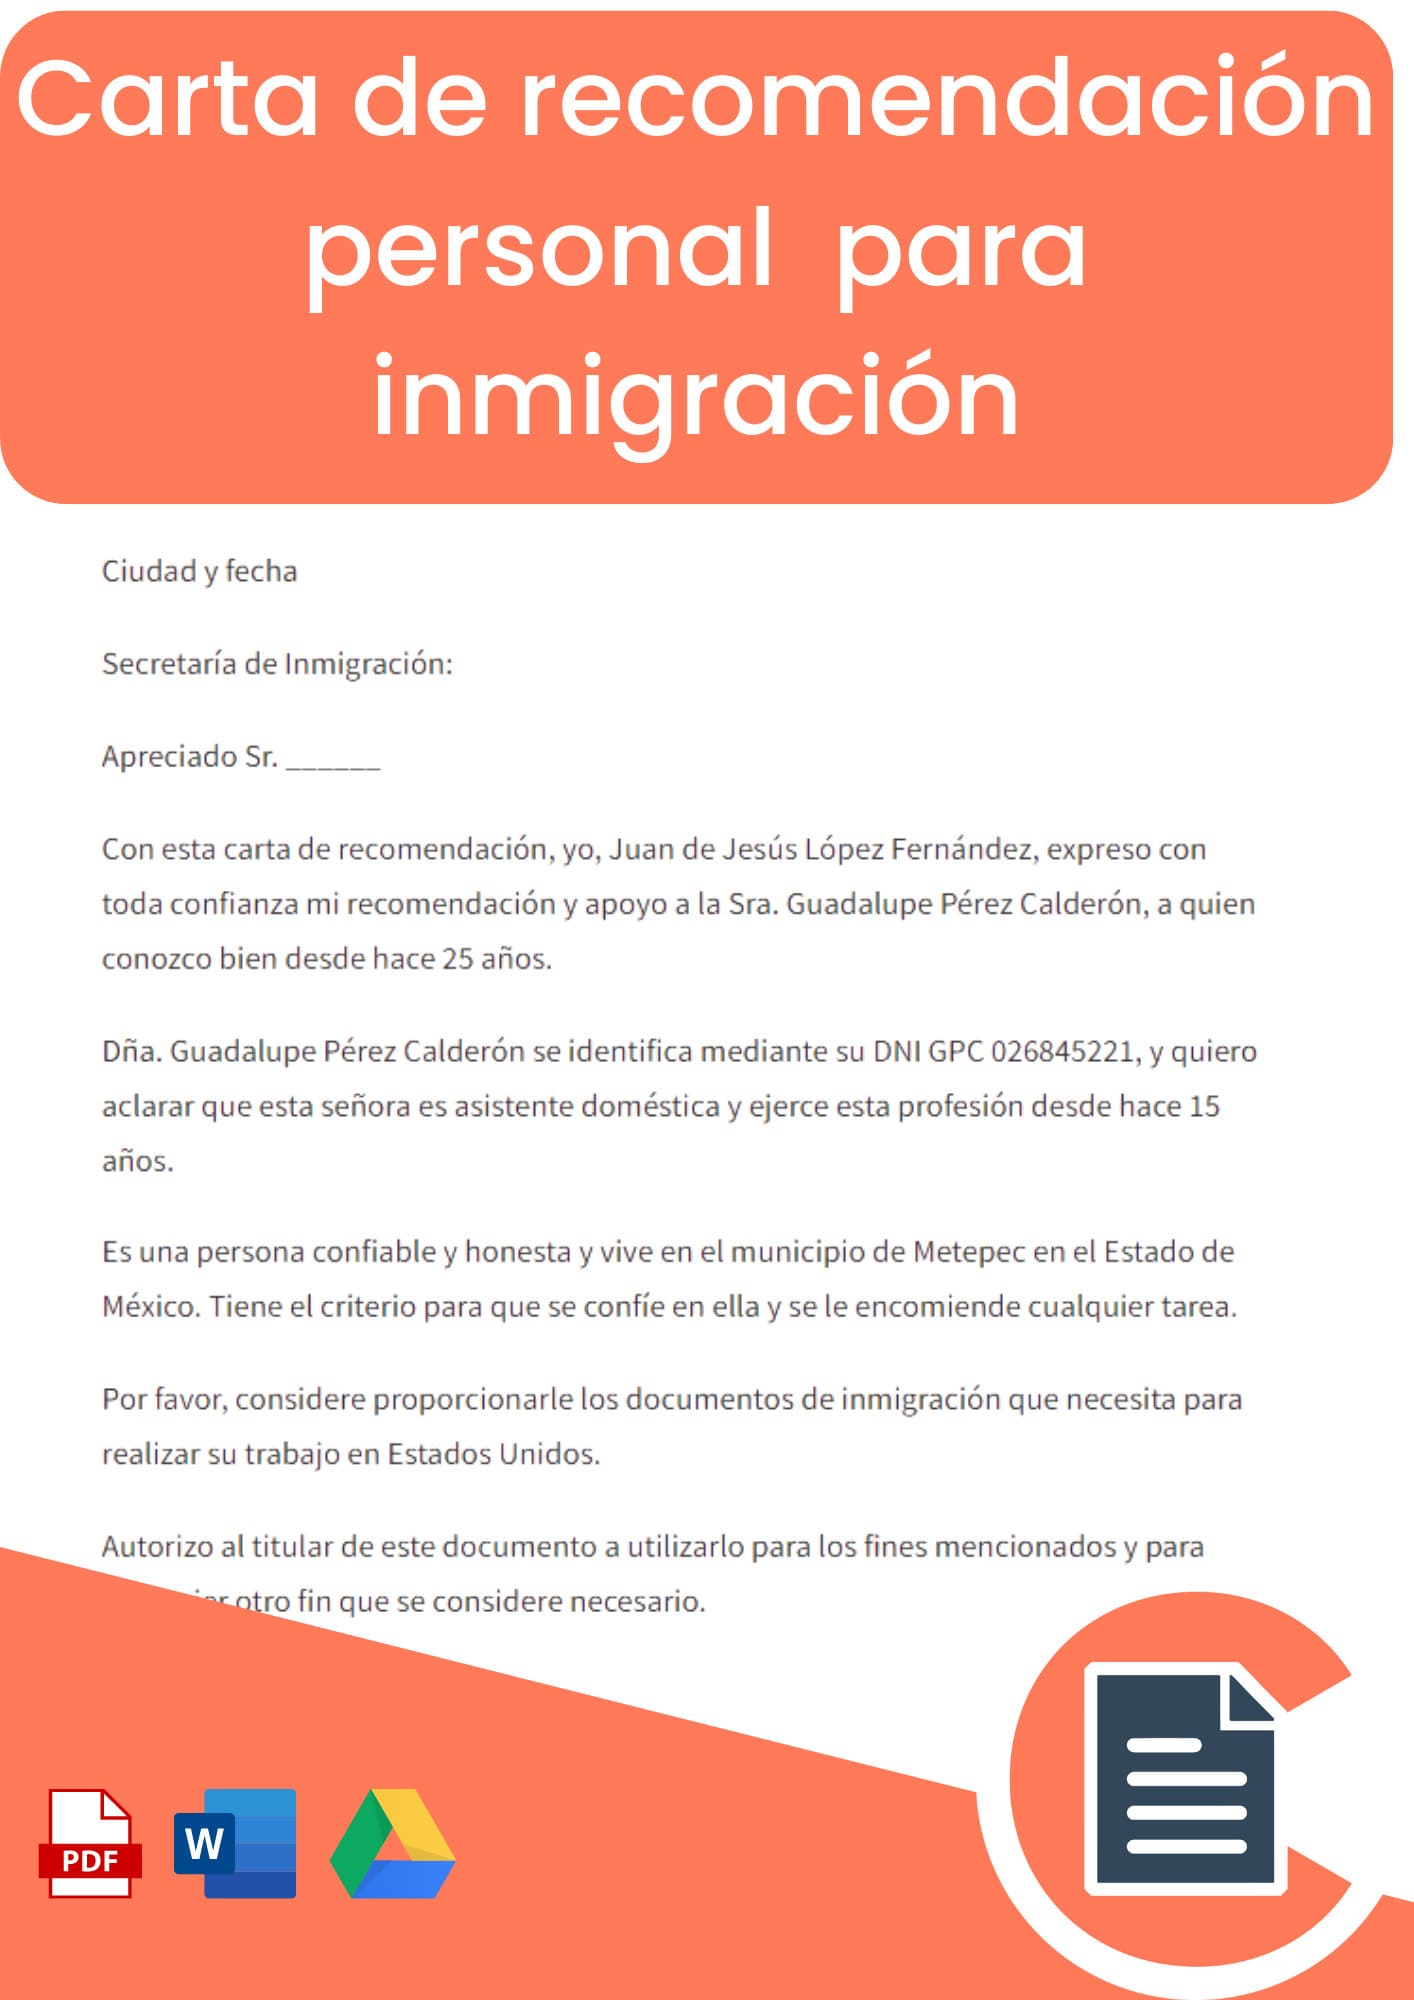 carta de recomendación personal para inmigración